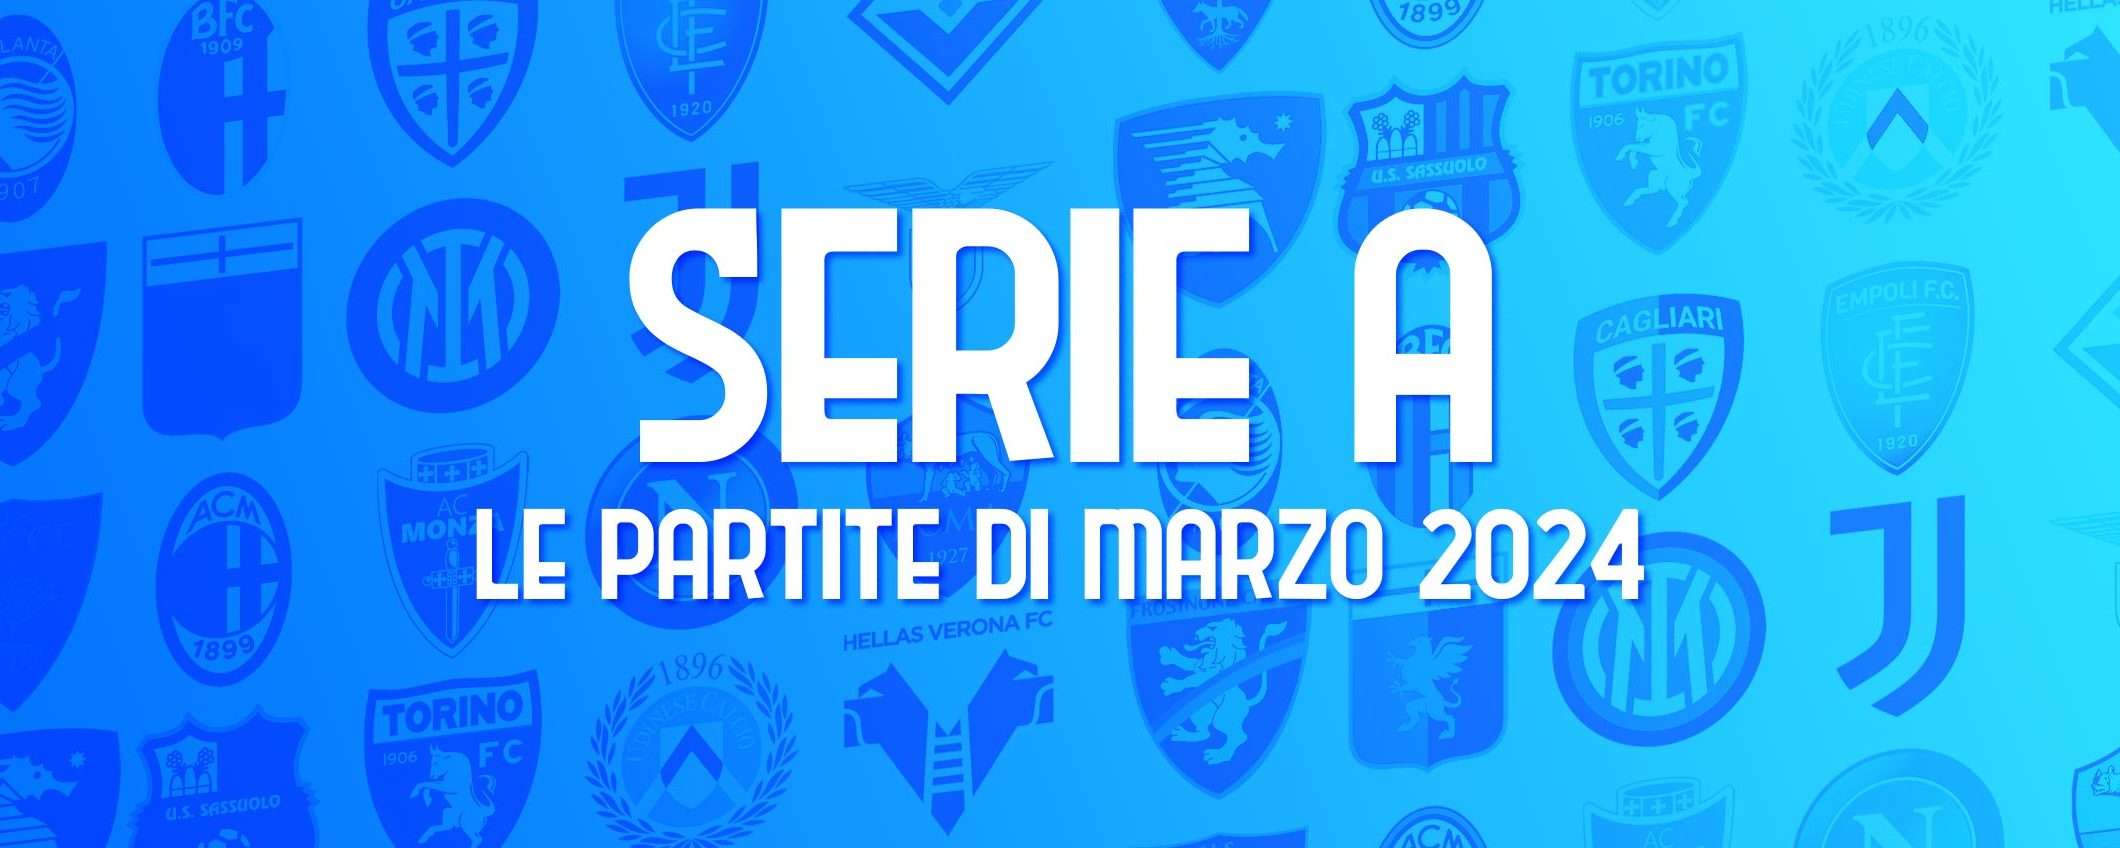 Serie A: calendario completo delle partite di marzo 2024